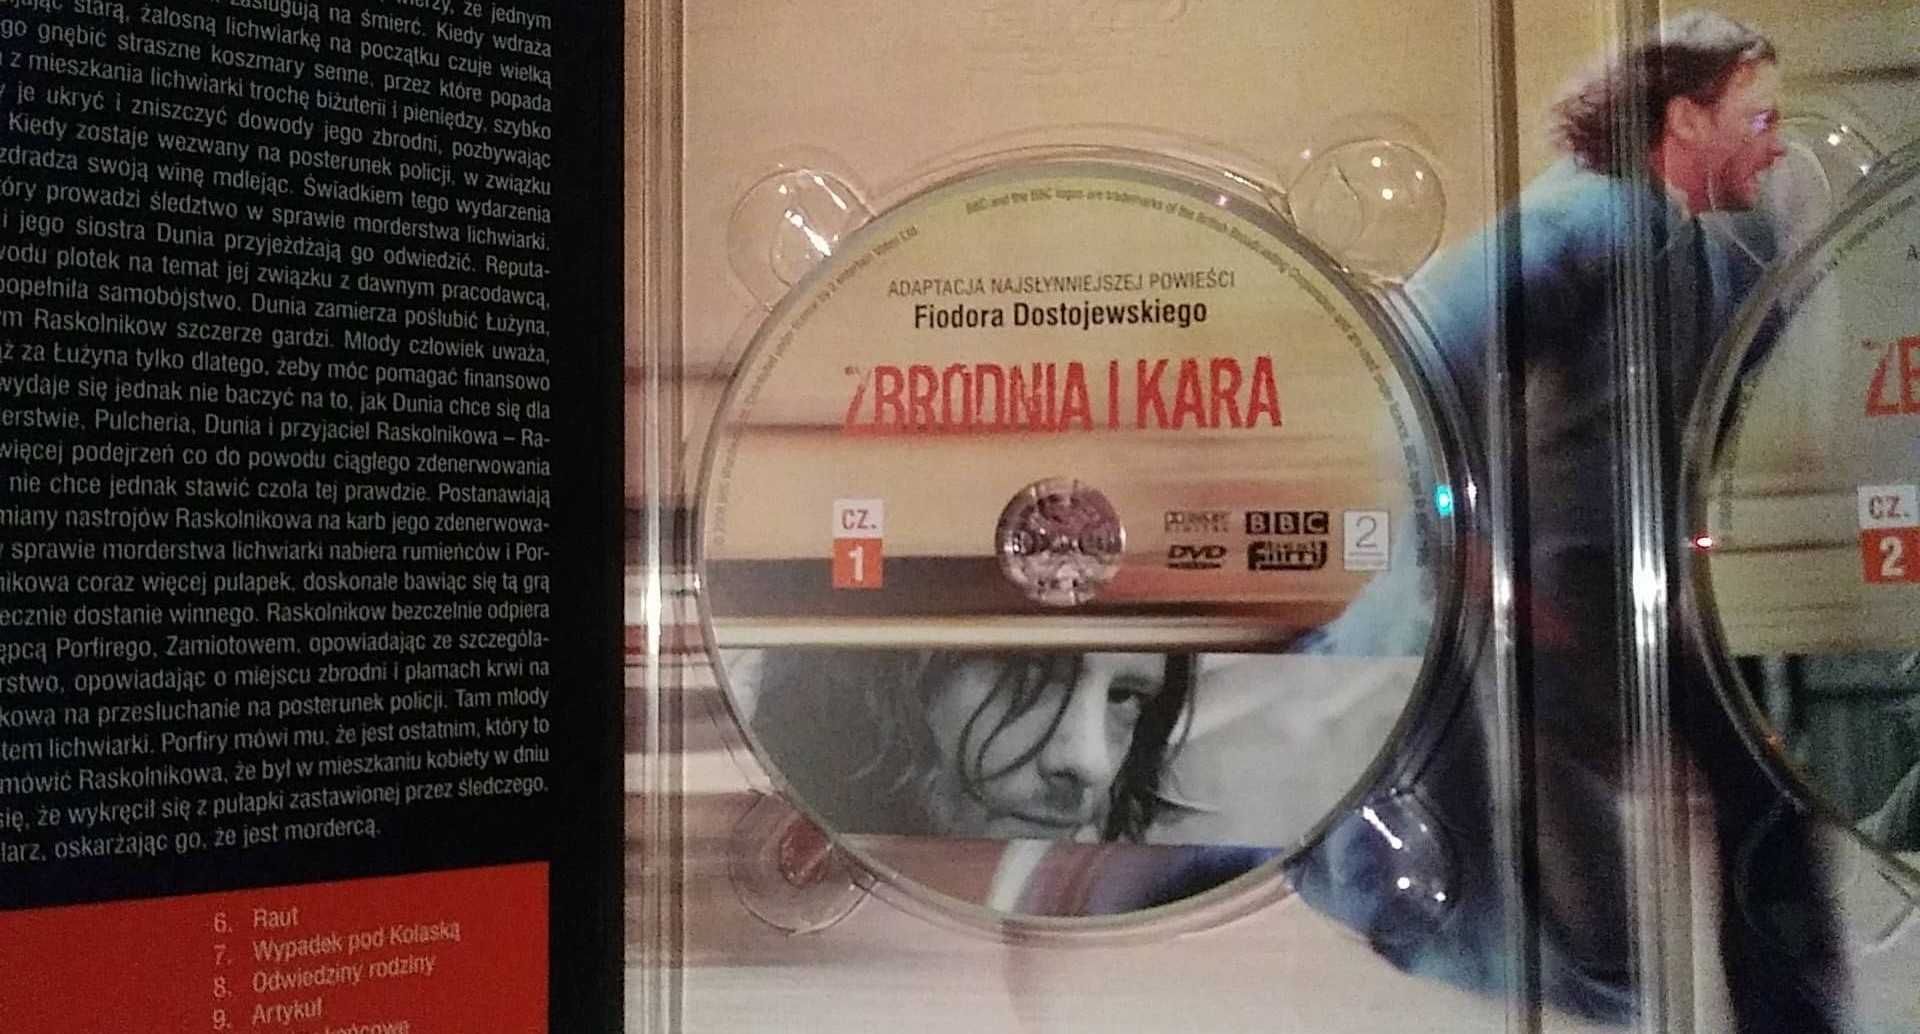 ZBRODNIA I KARA - dvd wydanie dwupłytowe